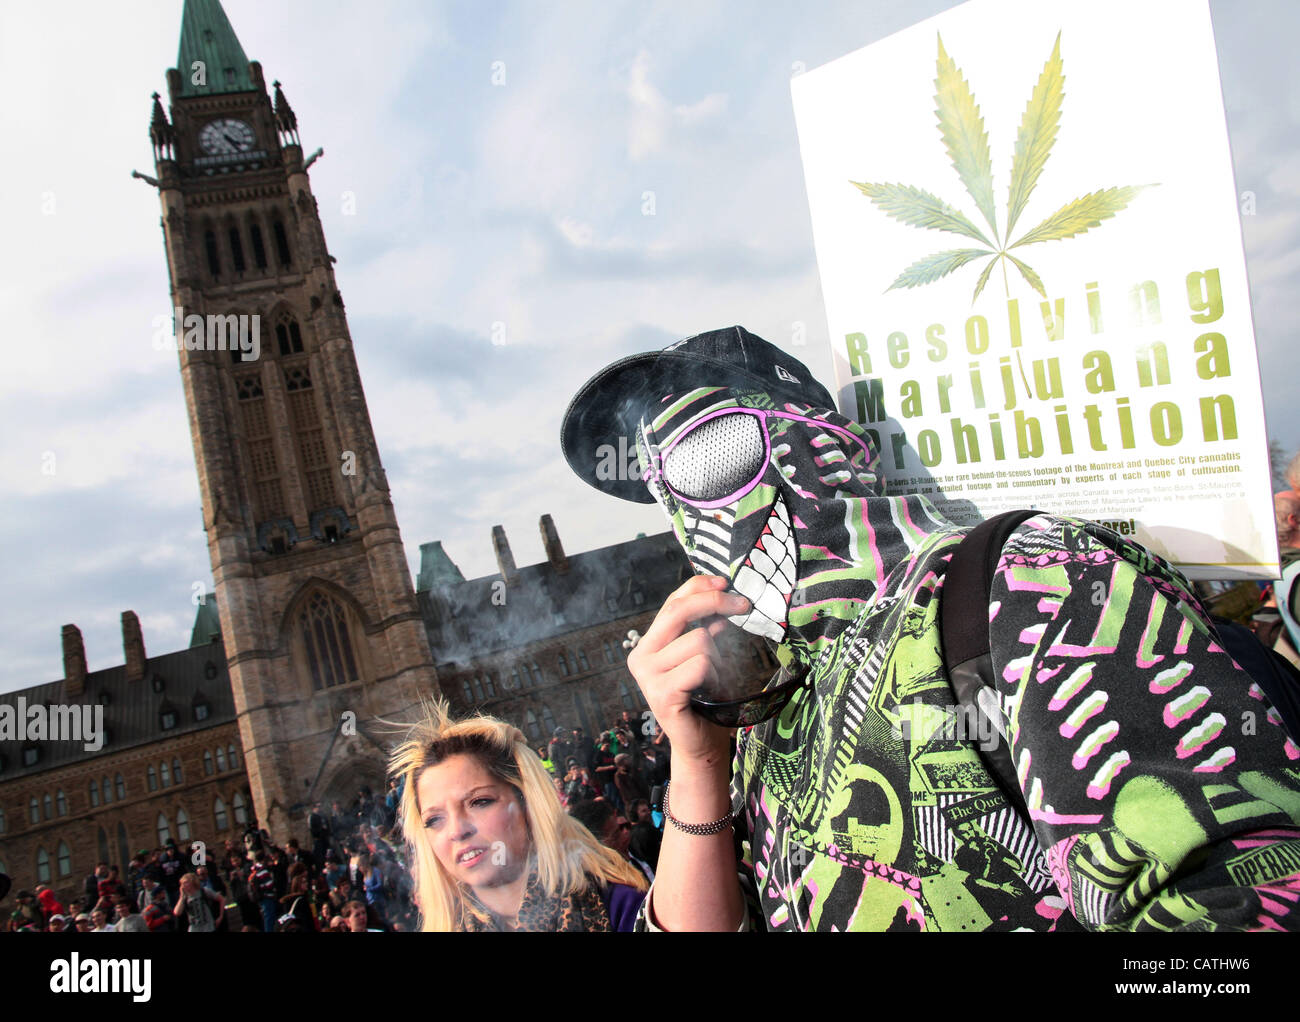 20 avril 2012 - Ottawa, Ontario, Canada - Les gens fument de la marijuana lors d'un rassemblement appelant à la dépénalisation de la marijuana ou 4:20 circulation le 20 avril 2012 à la colline du Parlement à Ottawa. (Crédit Image : © Sellehuddin ZUMAPRESS.com)/Kamal Banque D'Images